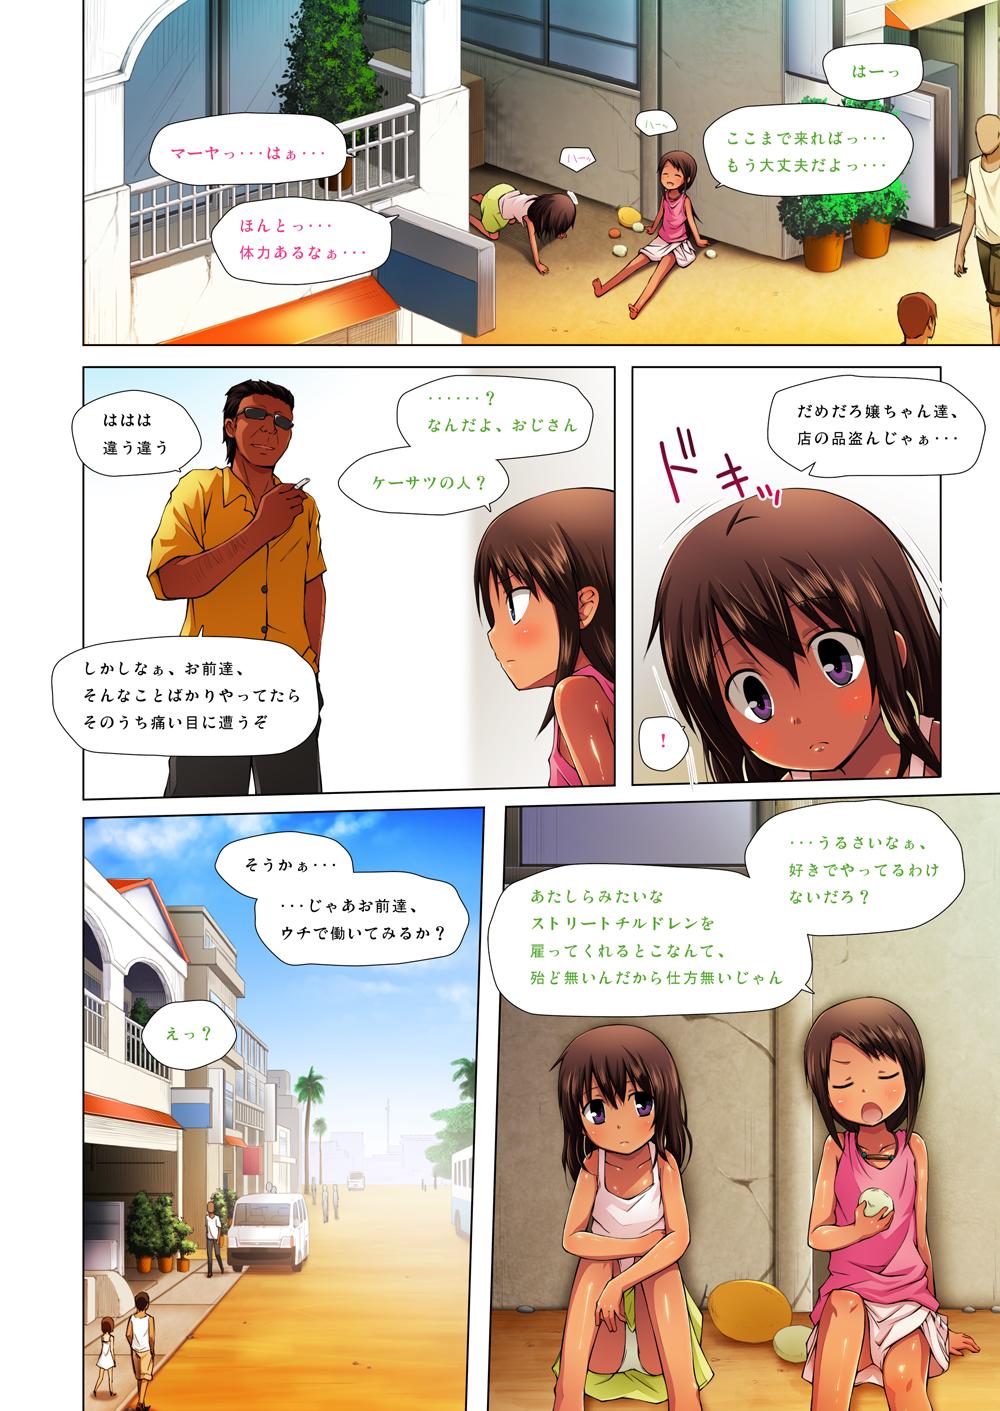 Solo Kago no Naka no Kotori wa Itsu Deyaru 0 Full Color Free - Page 3